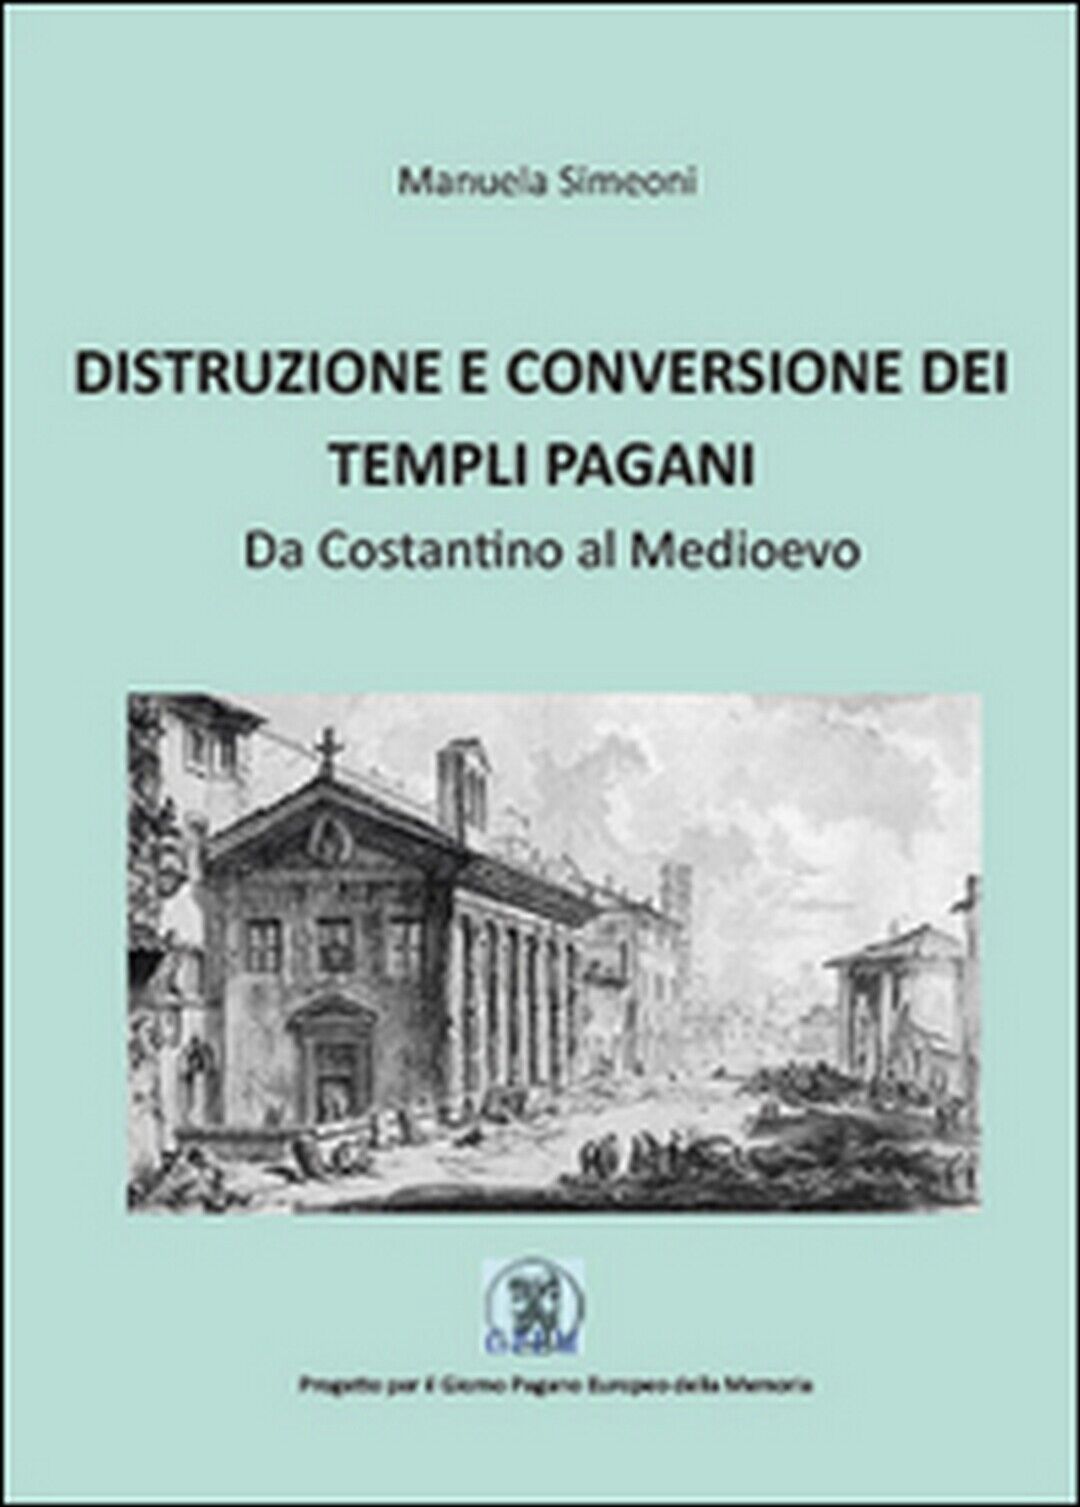 Distruzione e conversione dei templi pagani, di Manuela Simeoni,  2015,  Youcanp libro usato